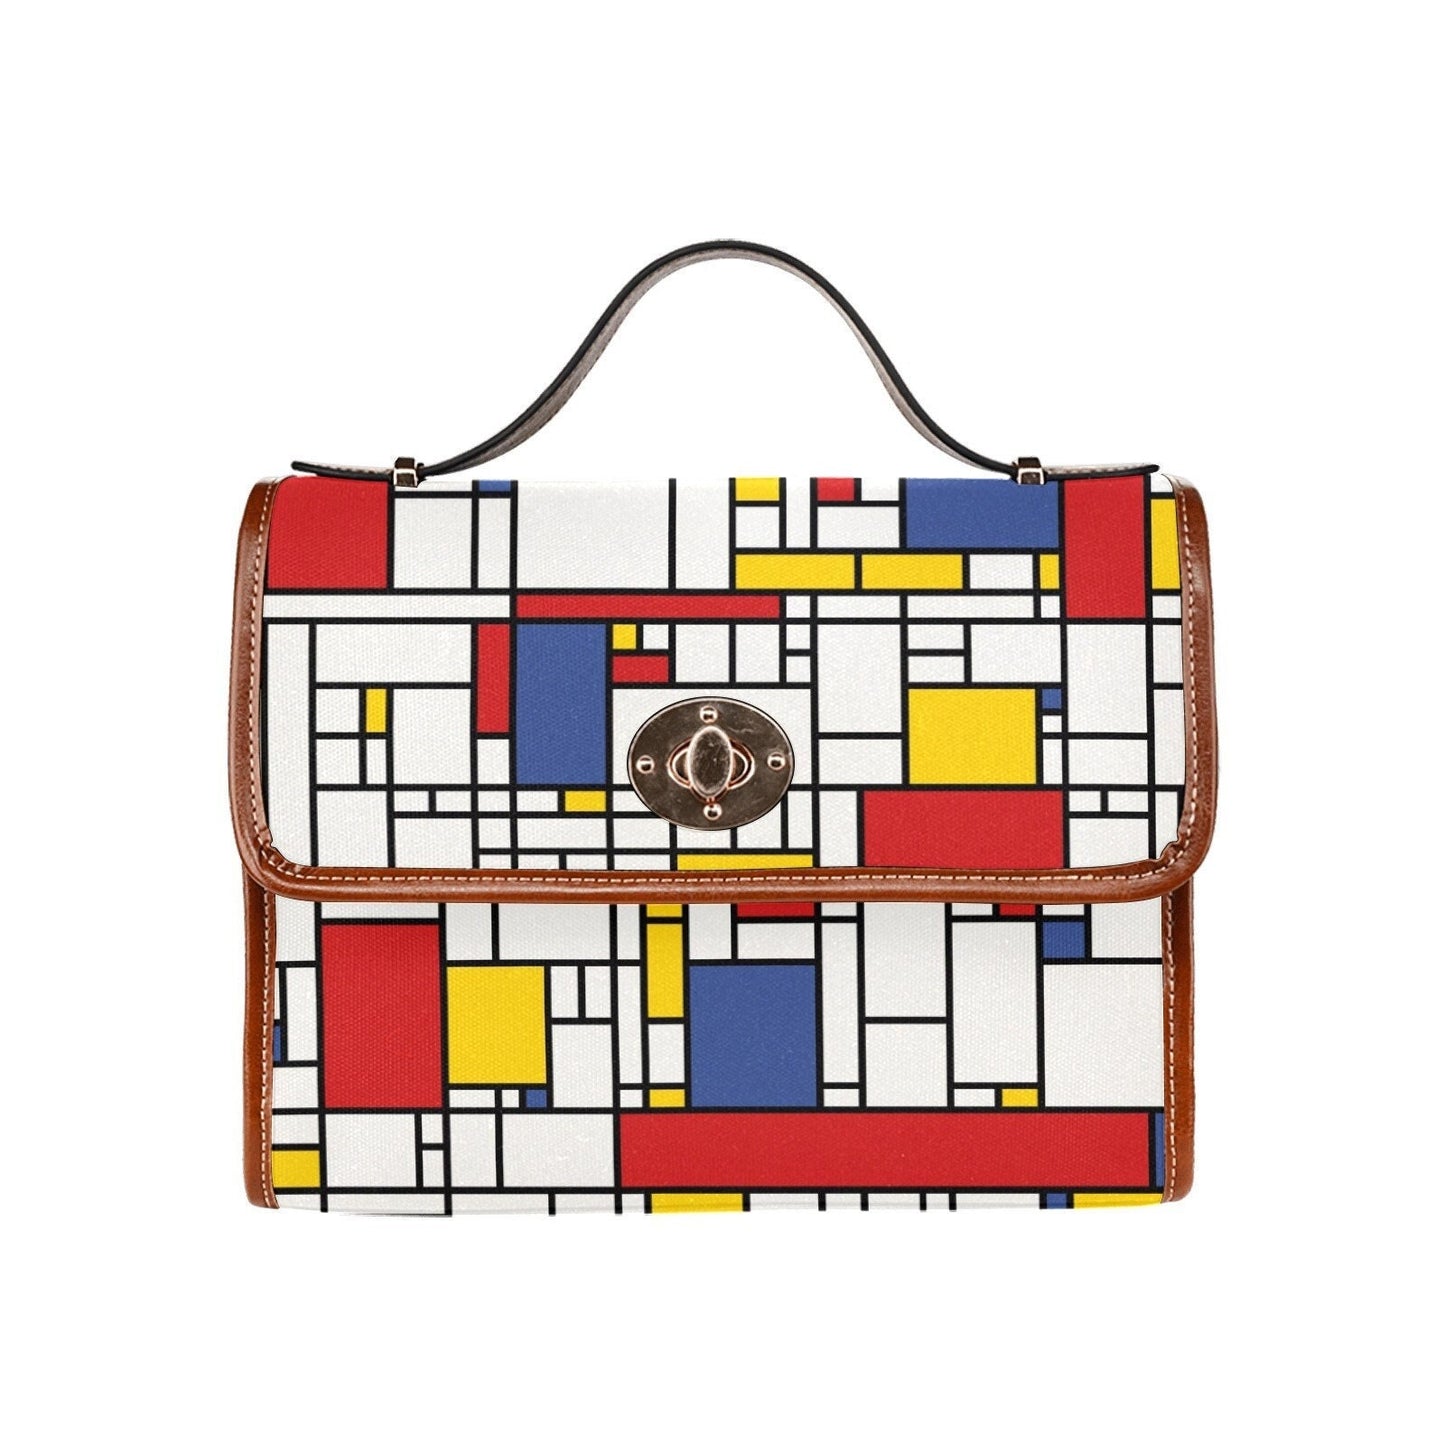 Damenhandtasche, Retro-Handtasche, Damengeldbörse, Mondrian-Geldbörse, Mod 60er Jahre, 60er-Jahre-Stil-Tasche, 60er-Jahre-Stil-Geldbörse, 60er-Jahre-inspiriert, 60er-Jahre-Stil-Handtasche